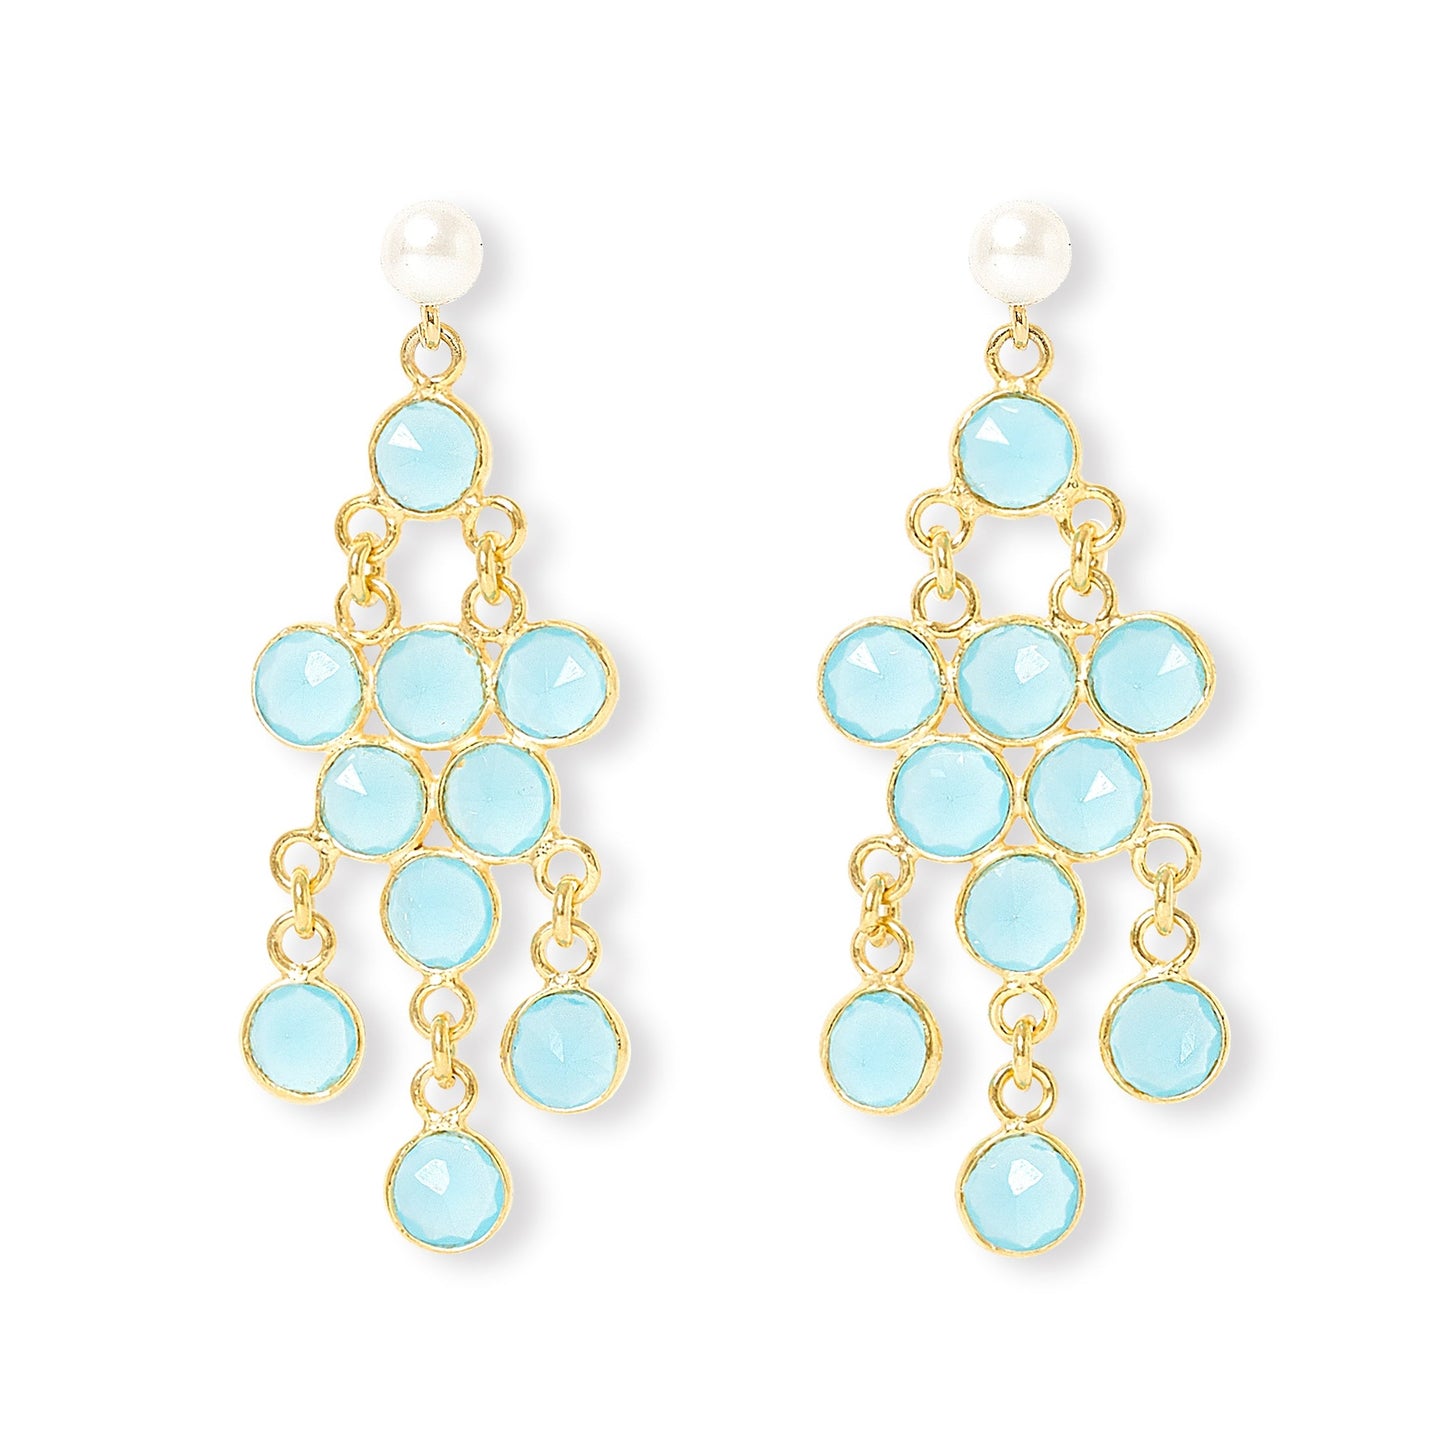 Clara cultured freshwater pearl earrings & aqua chalcedony chandelier earrings